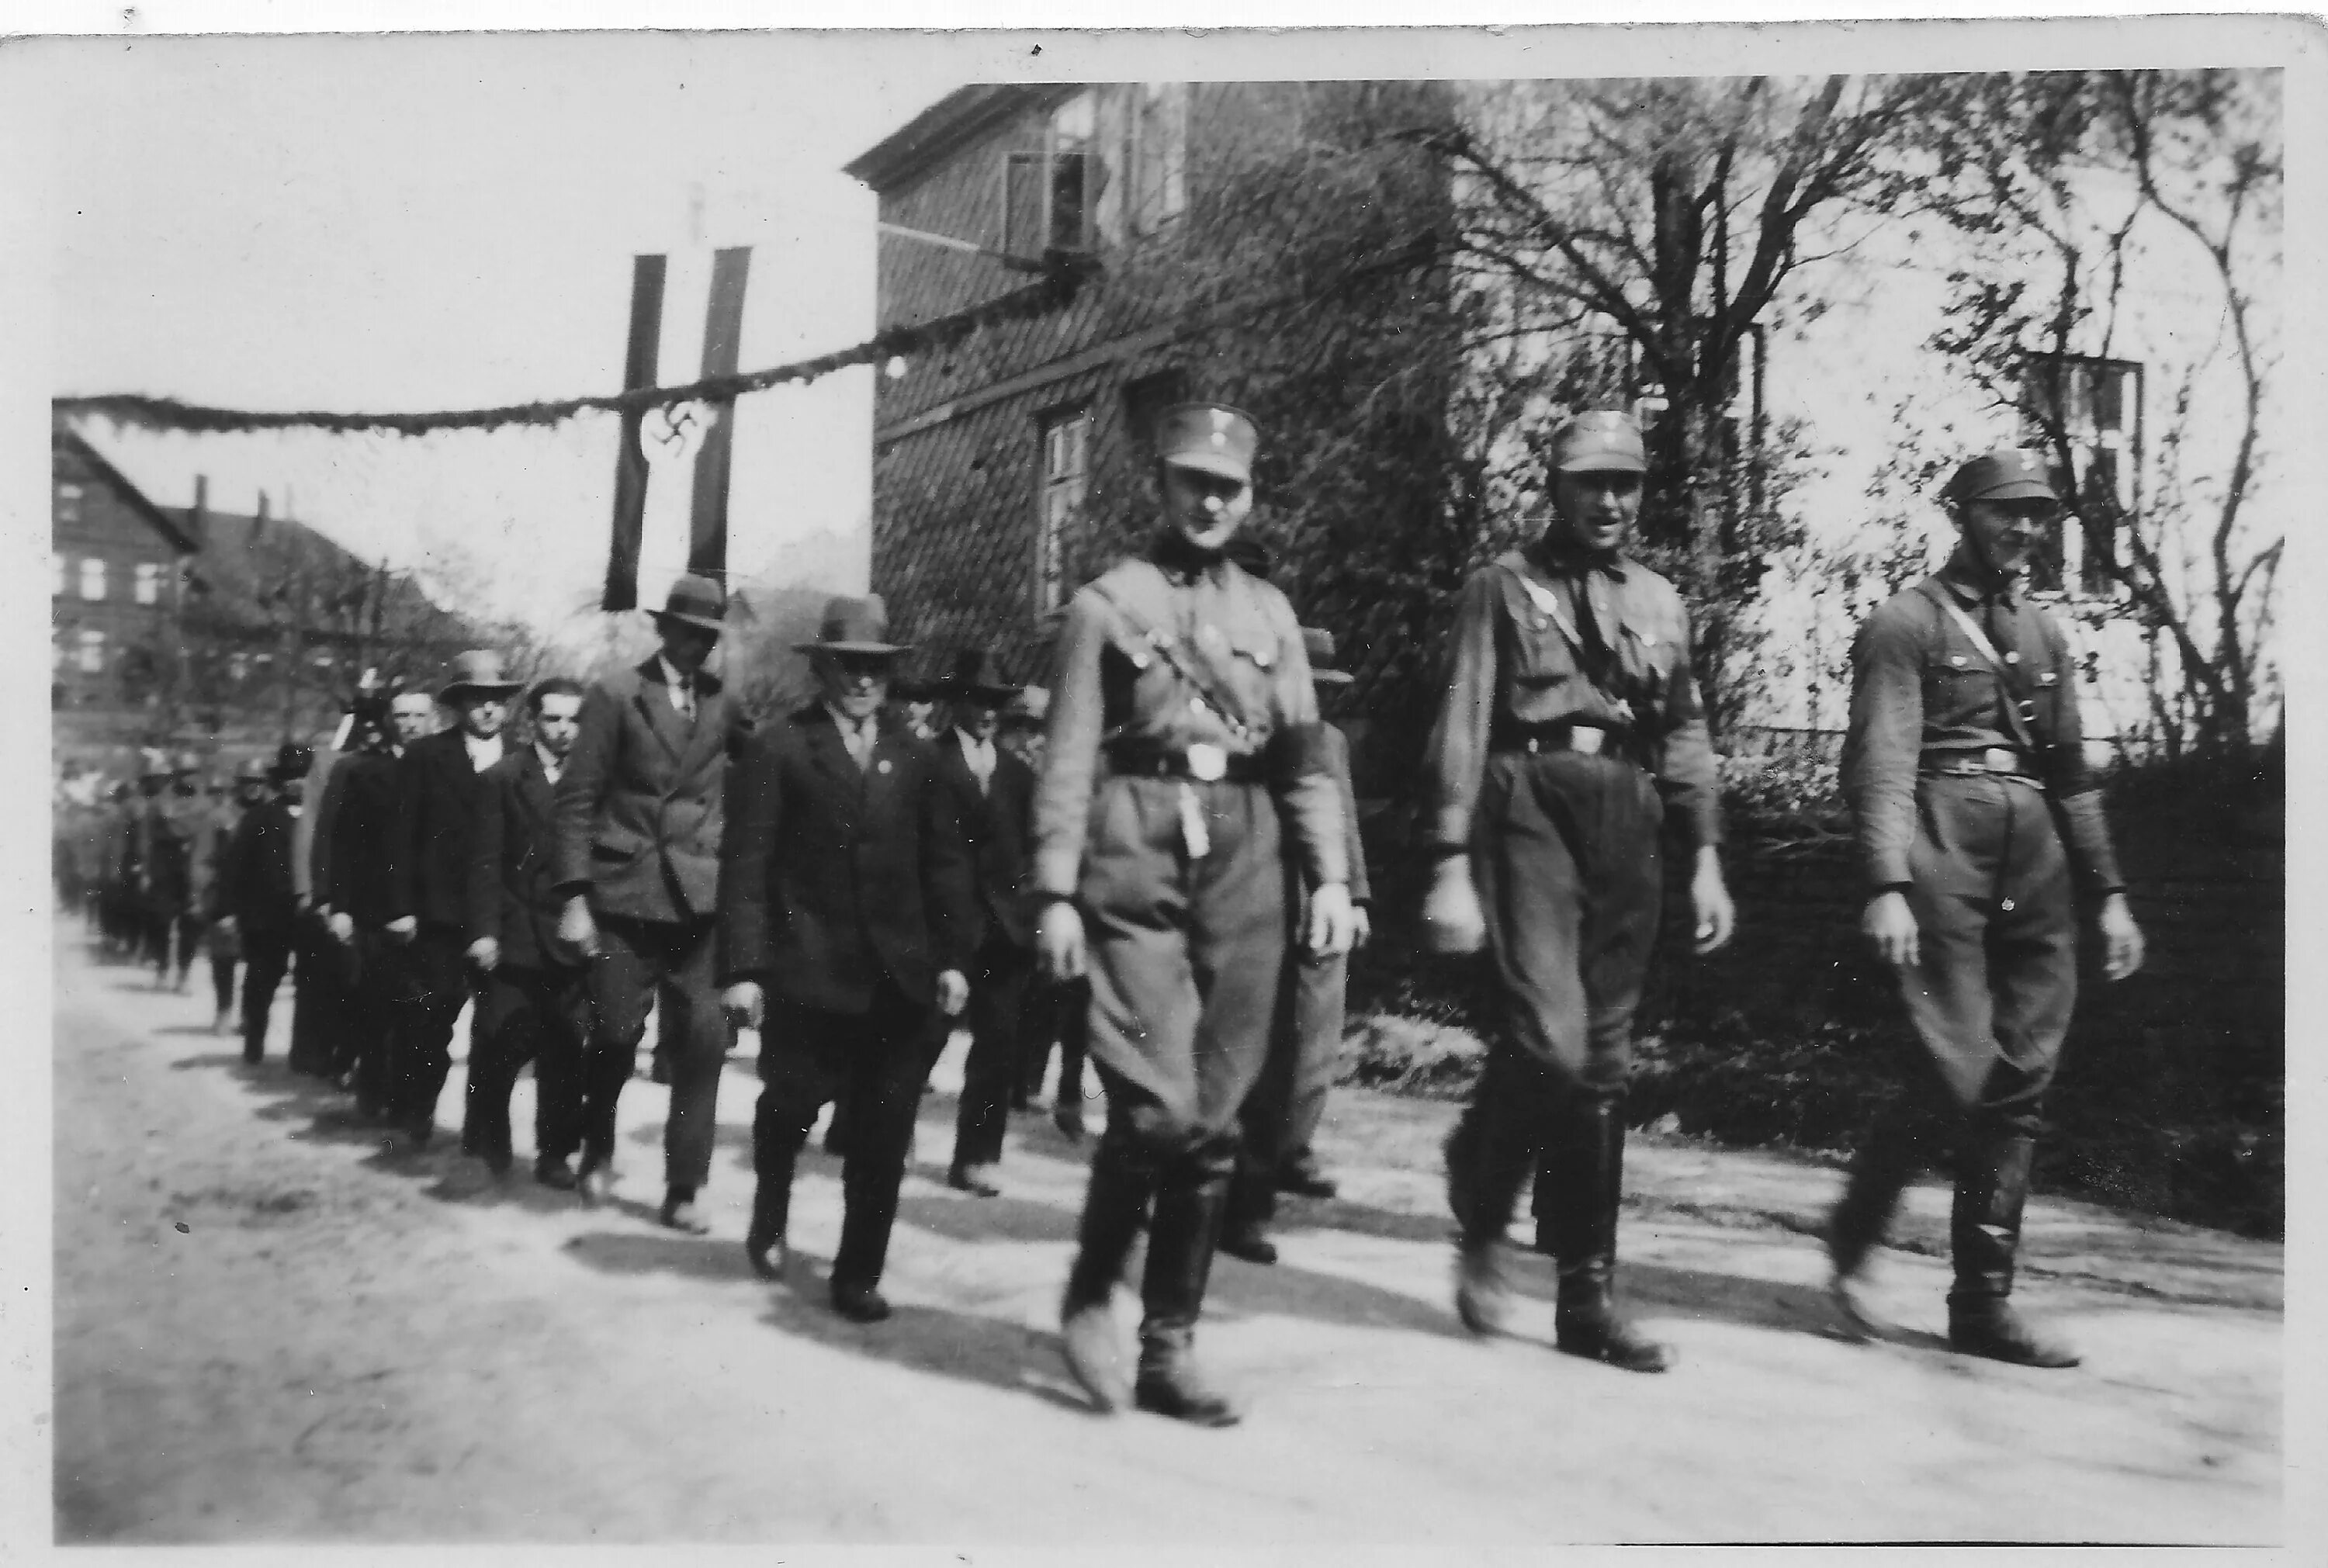 Фашистские отряды. Штурмовые отряды са Гитлера 1921-1945. Са штурмовые отряды НСДАП. Штурмовые отряды (Sturmabteilung. Са штурмовые отряды НСДАП форма.